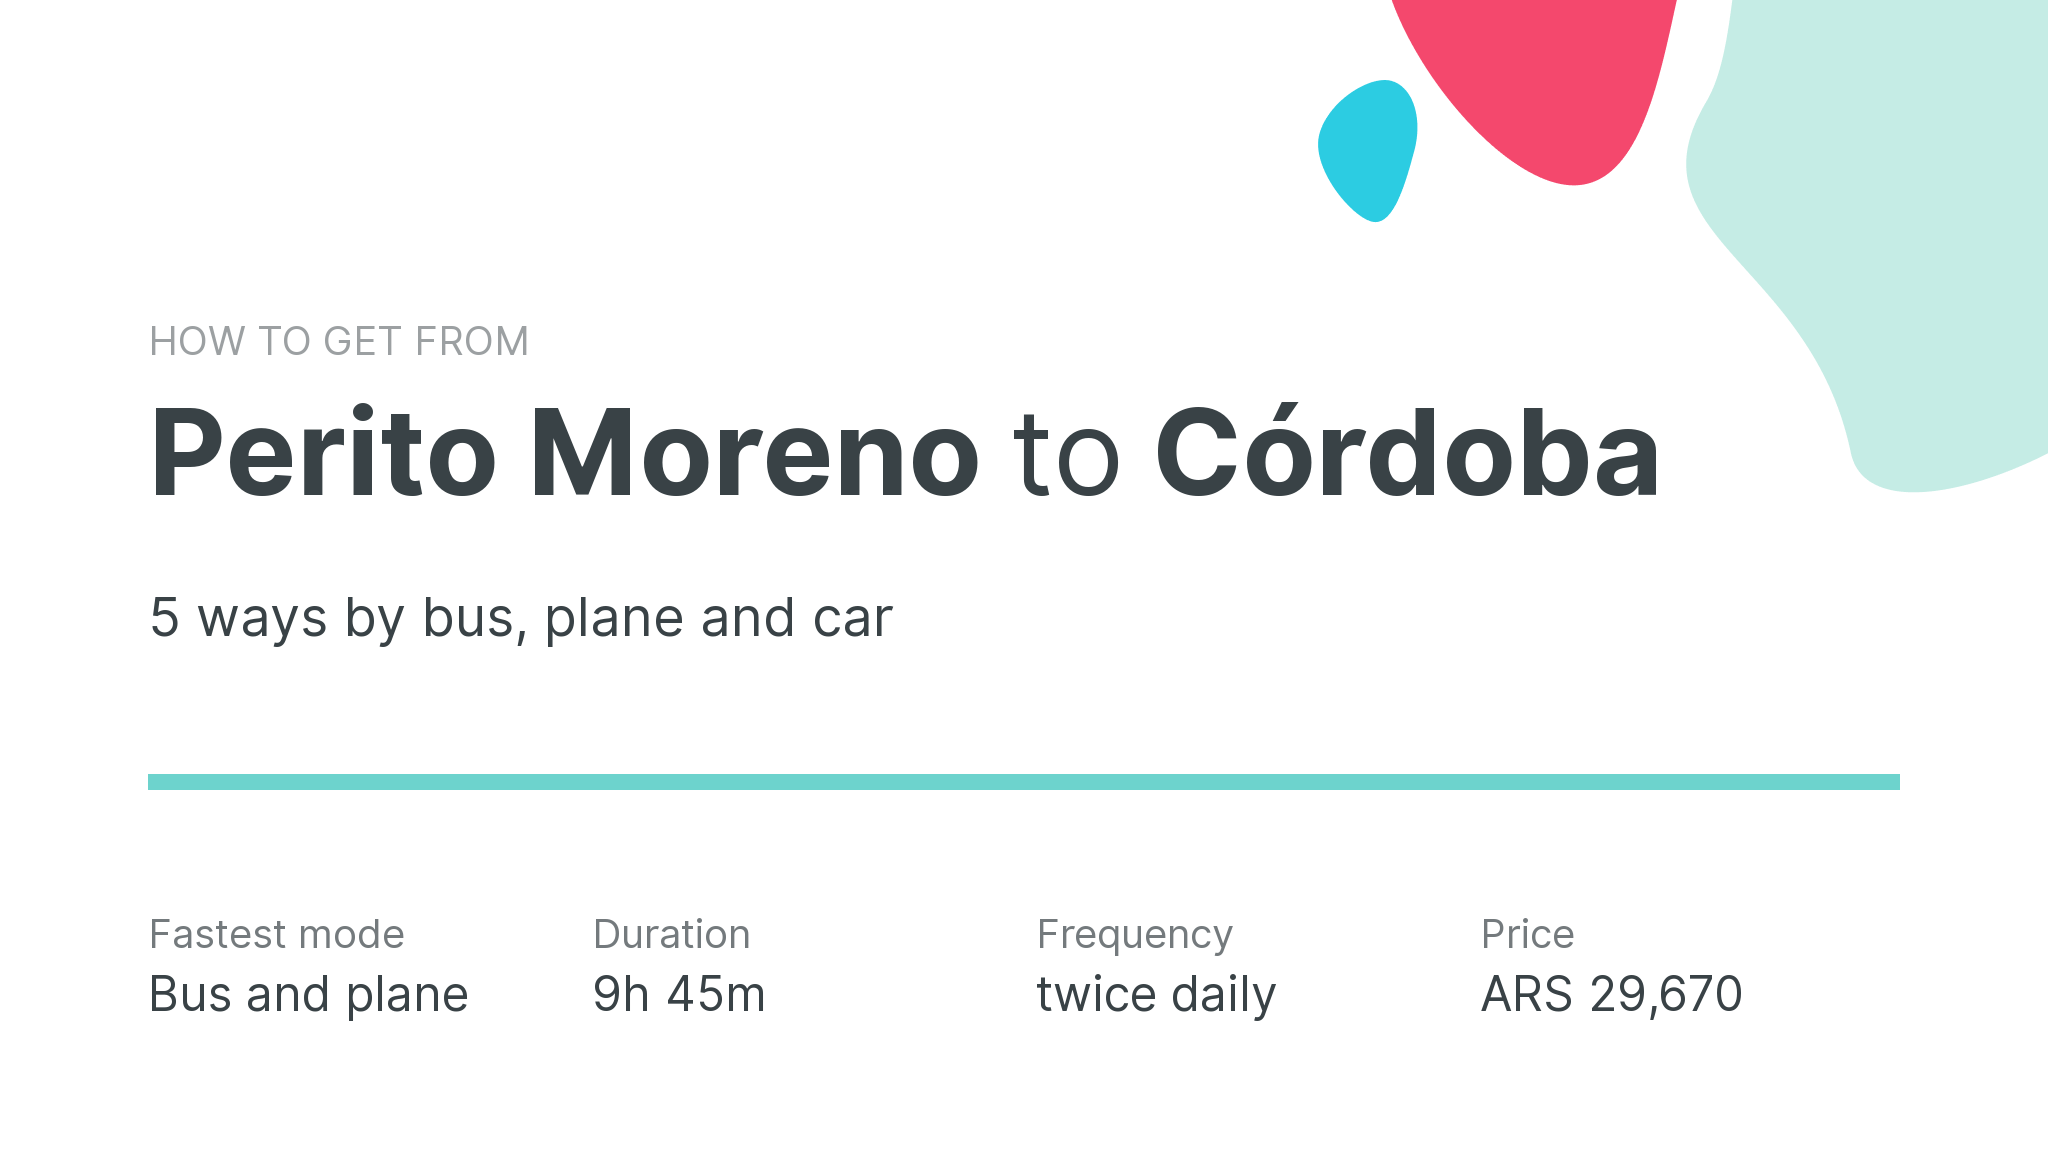 How do I get from Perito Moreno to Córdoba